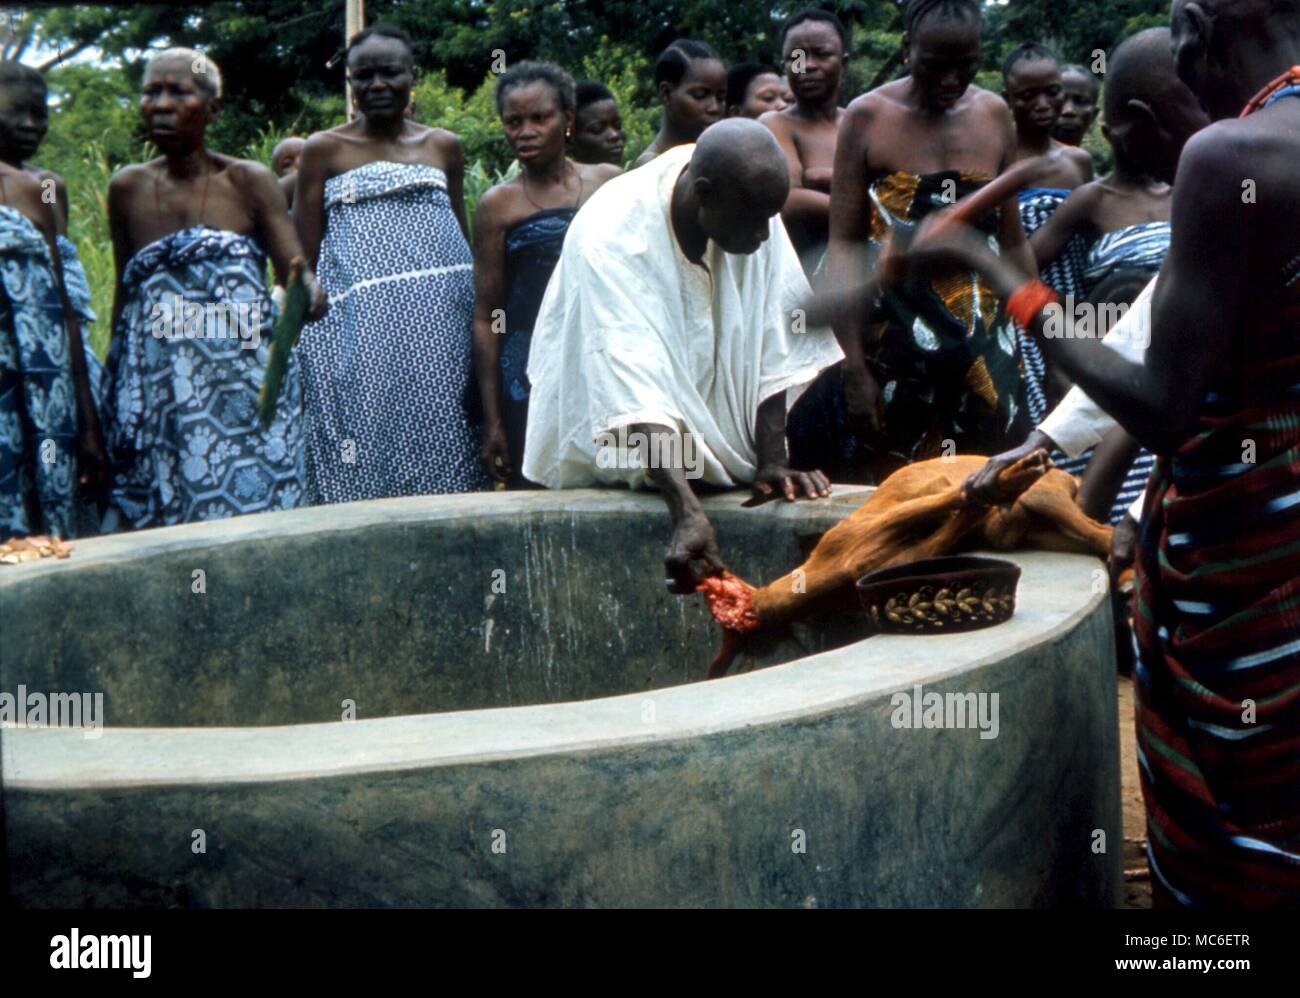 Afrikanische Magie - Sopono Anbeter, von einer Hexe gerichtet - Arzt, Opfern eine Ziege Stockfoto